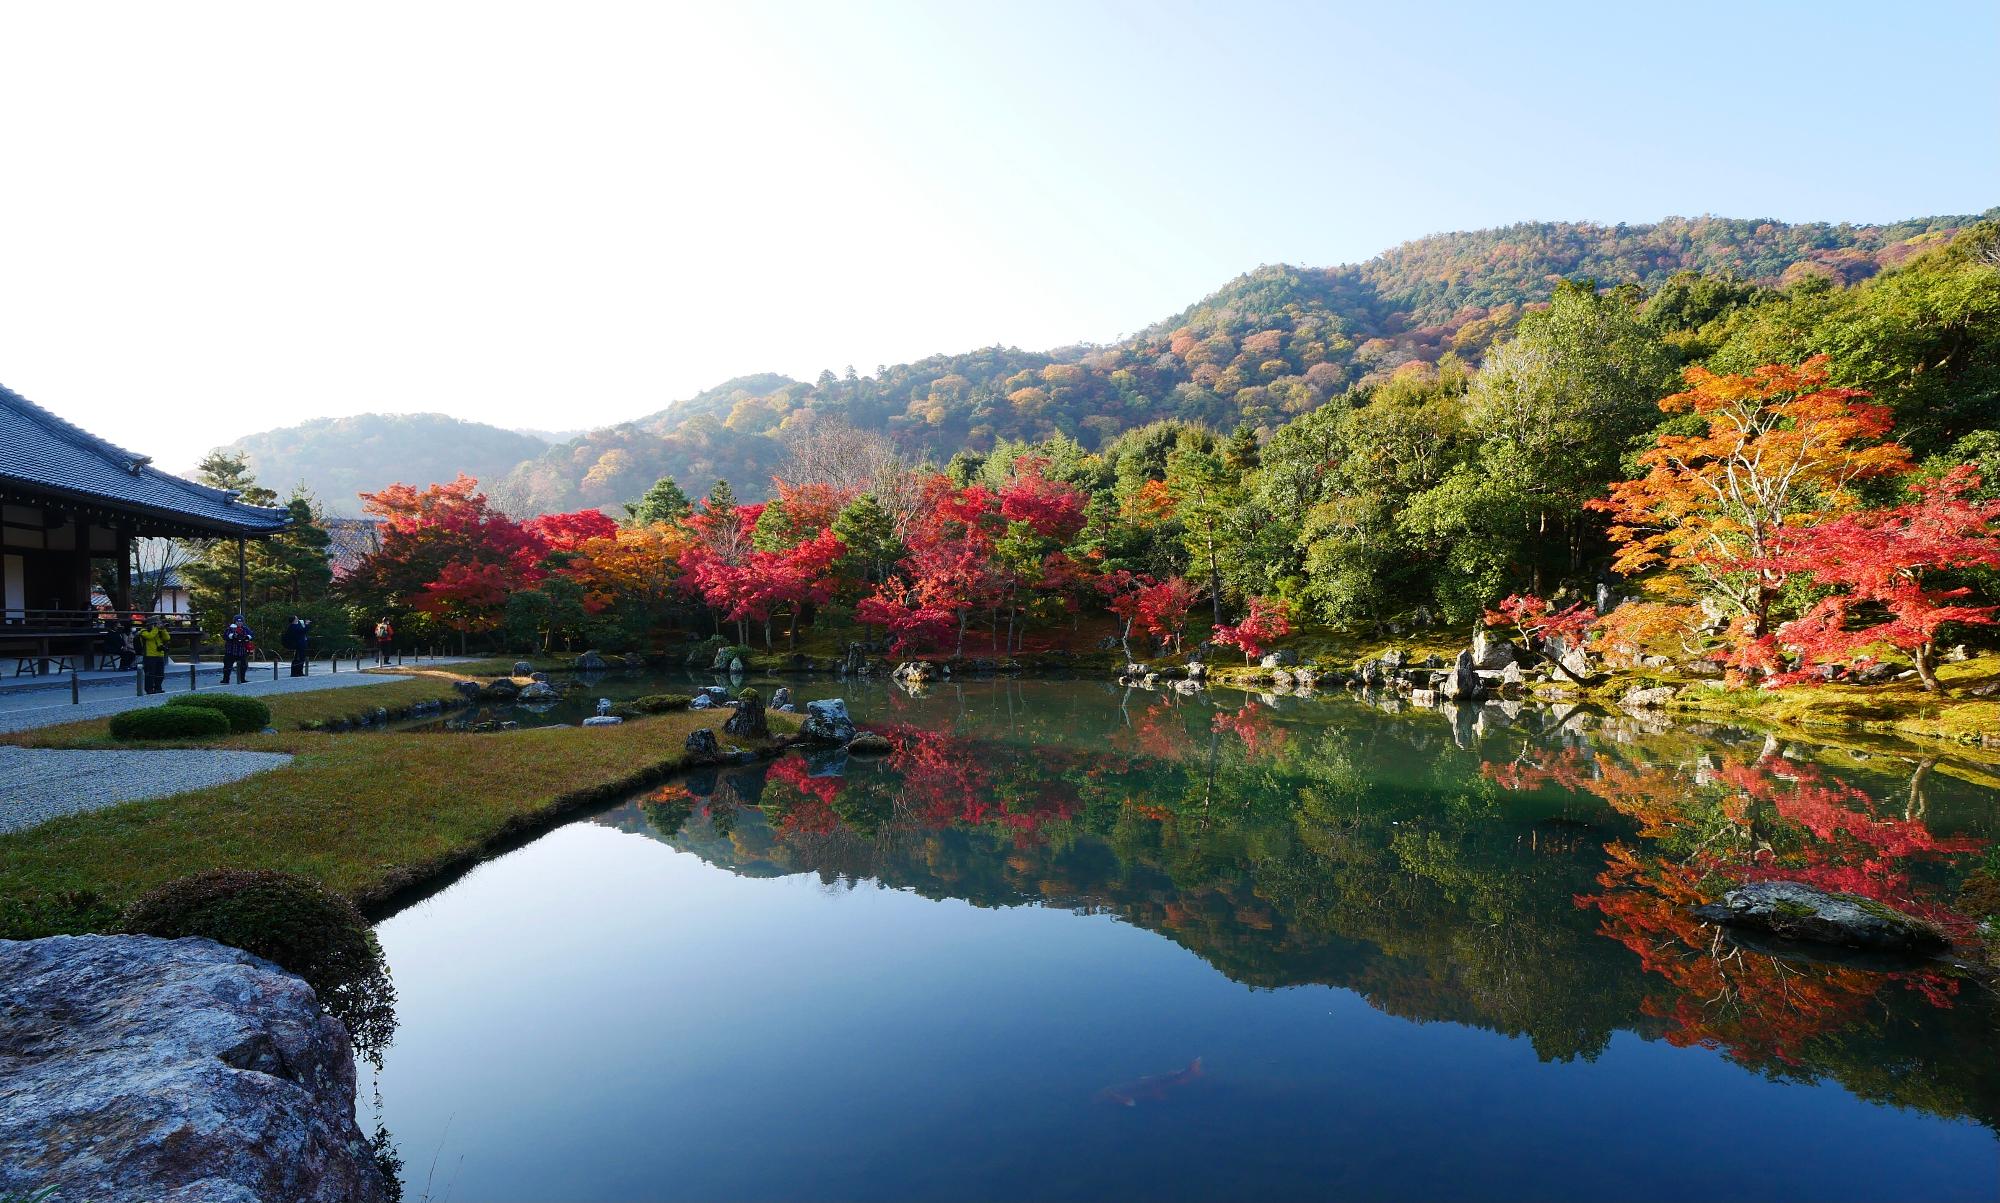 京都嵐山 天龍寺で早朝参拝を実施中 紅葉が見頃の庭園でリフレクション風景を楽しむ Mami Yahoo Japan クリエイターズプログラム